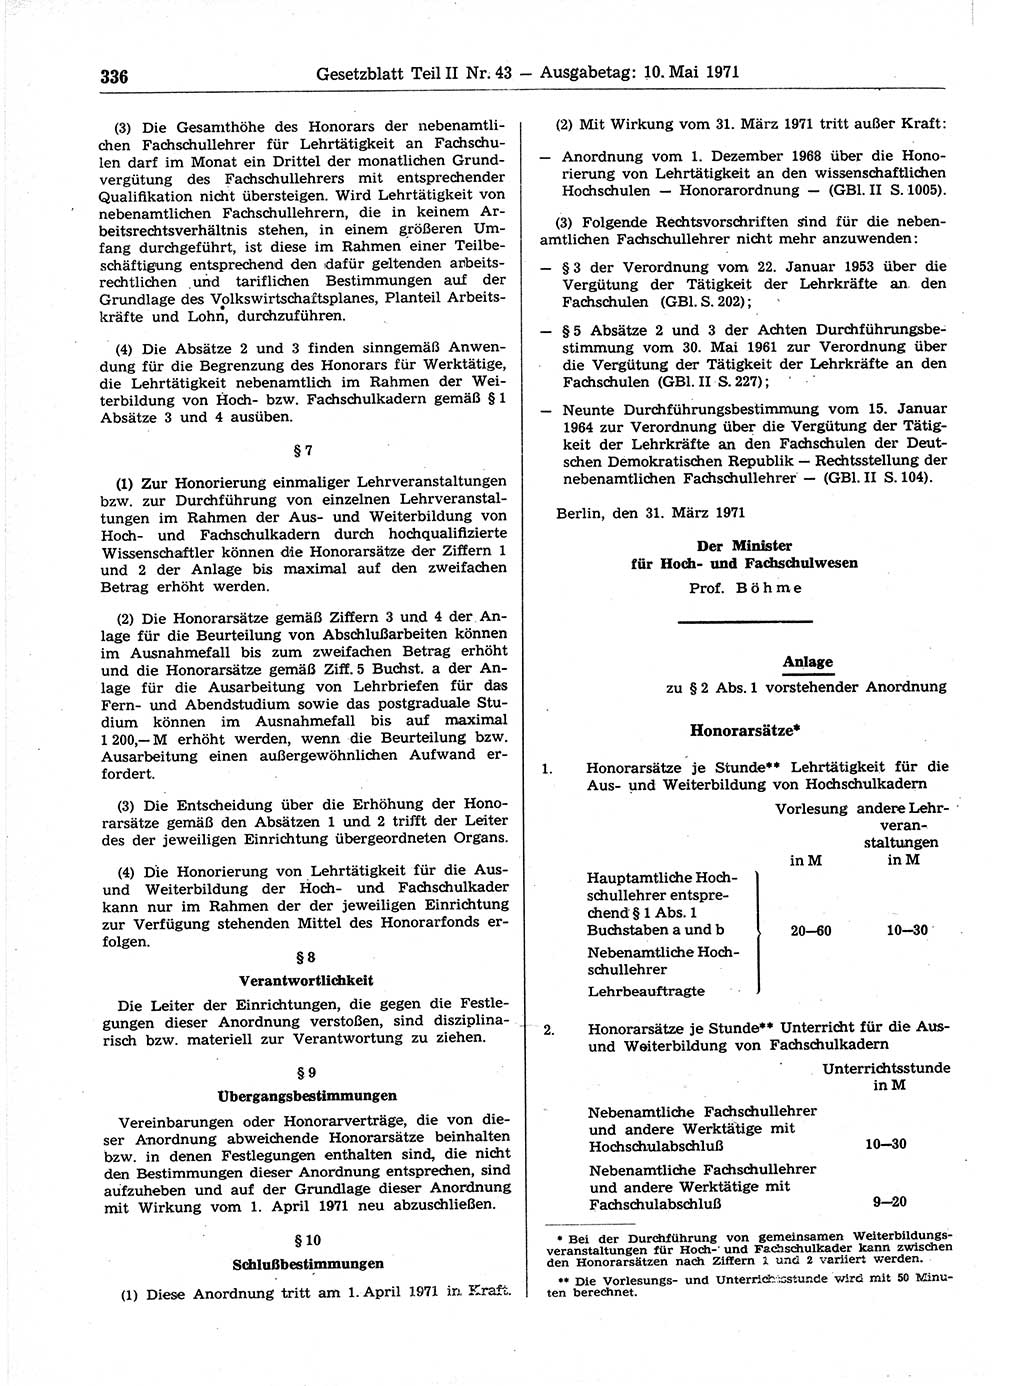 Gesetzblatt (GBl.) der Deutschen Demokratischen Republik (DDR) Teil ⅠⅠ 1971, Seite 336 (GBl. DDR ⅠⅠ 1971, S. 336)